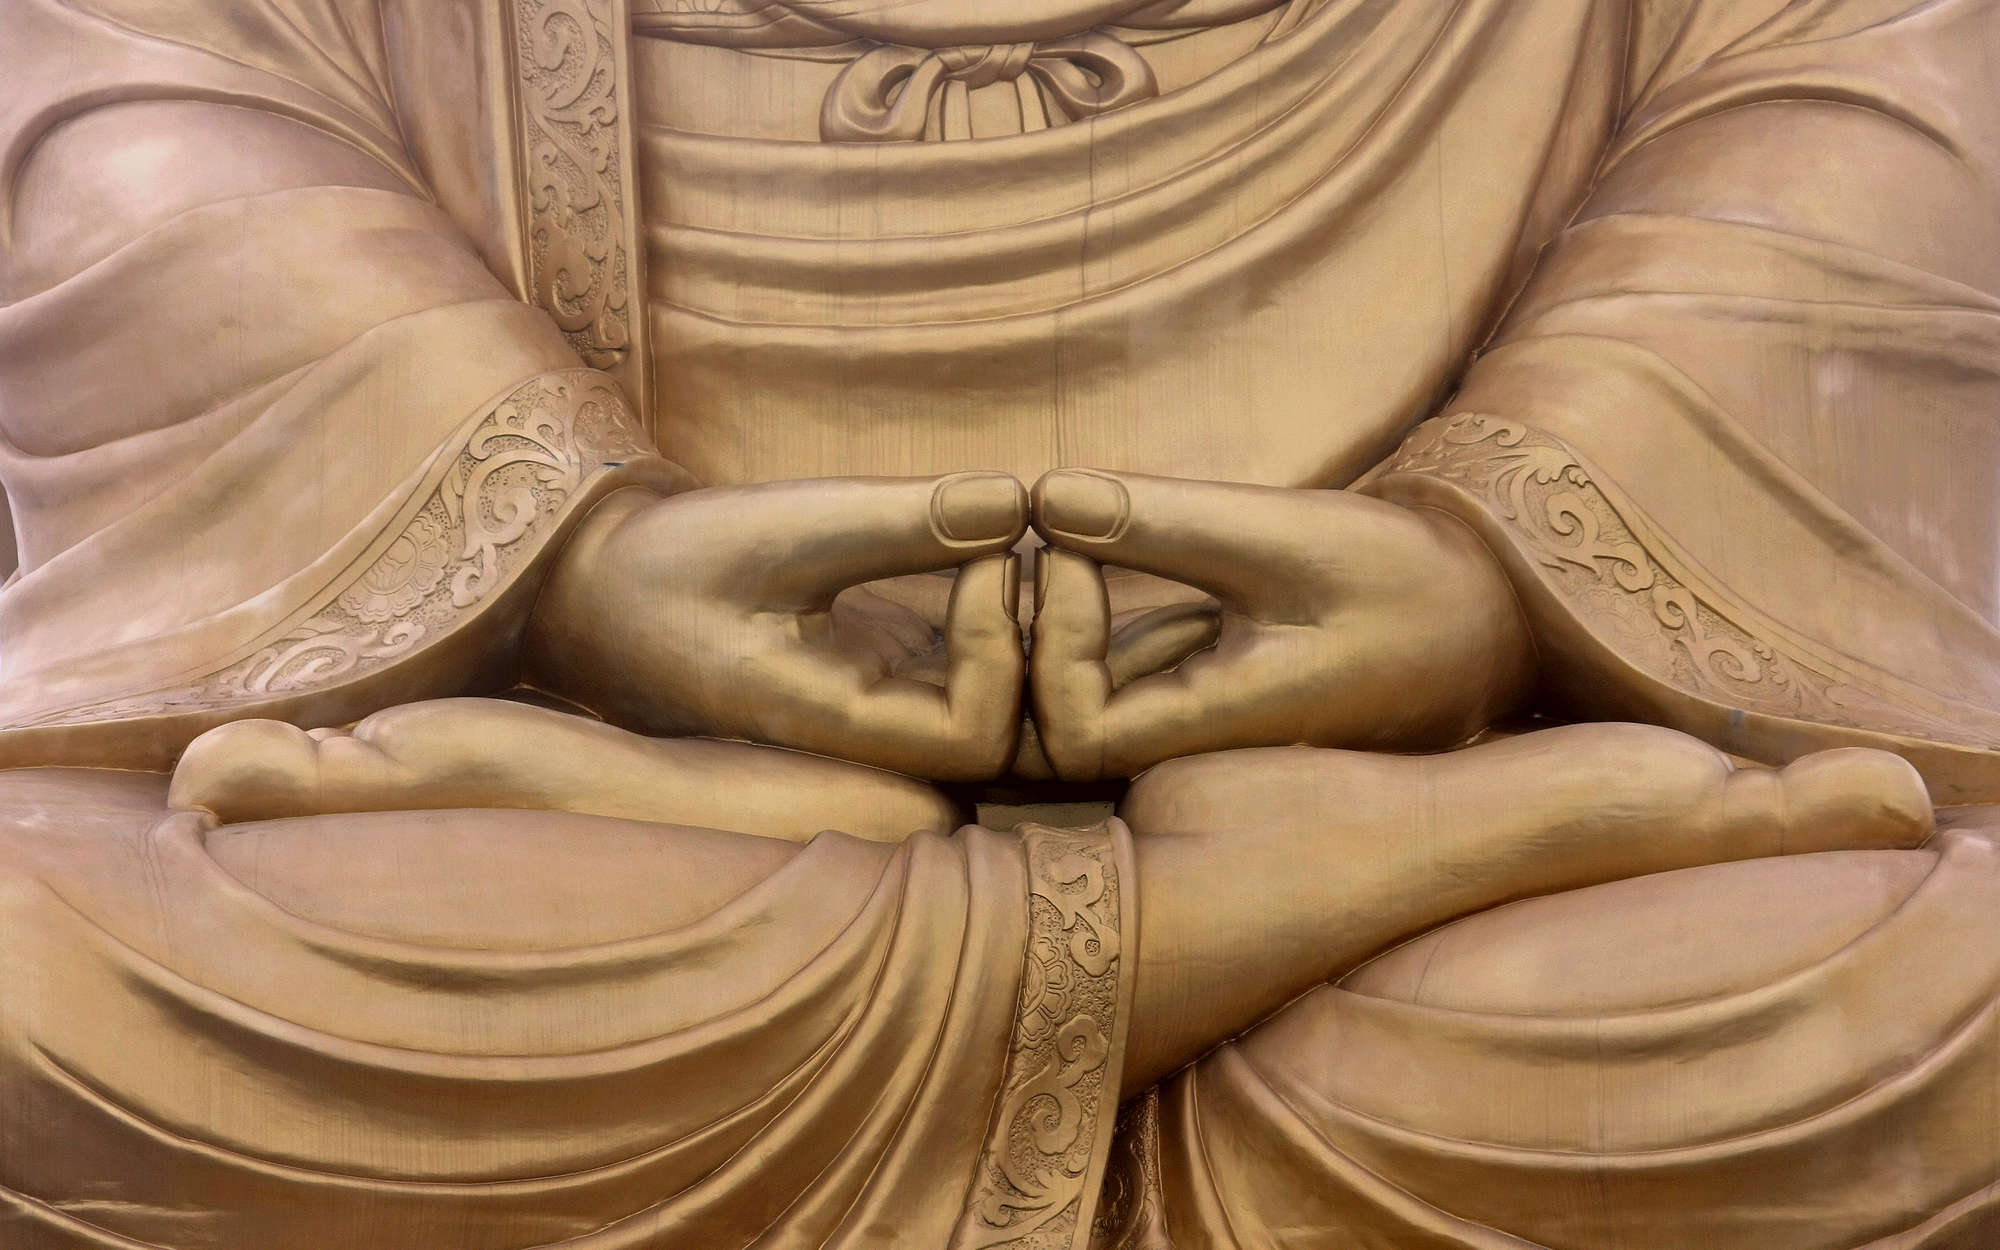             Fotomurali Religione Statua di Buddha - Pile liscio Premium
        